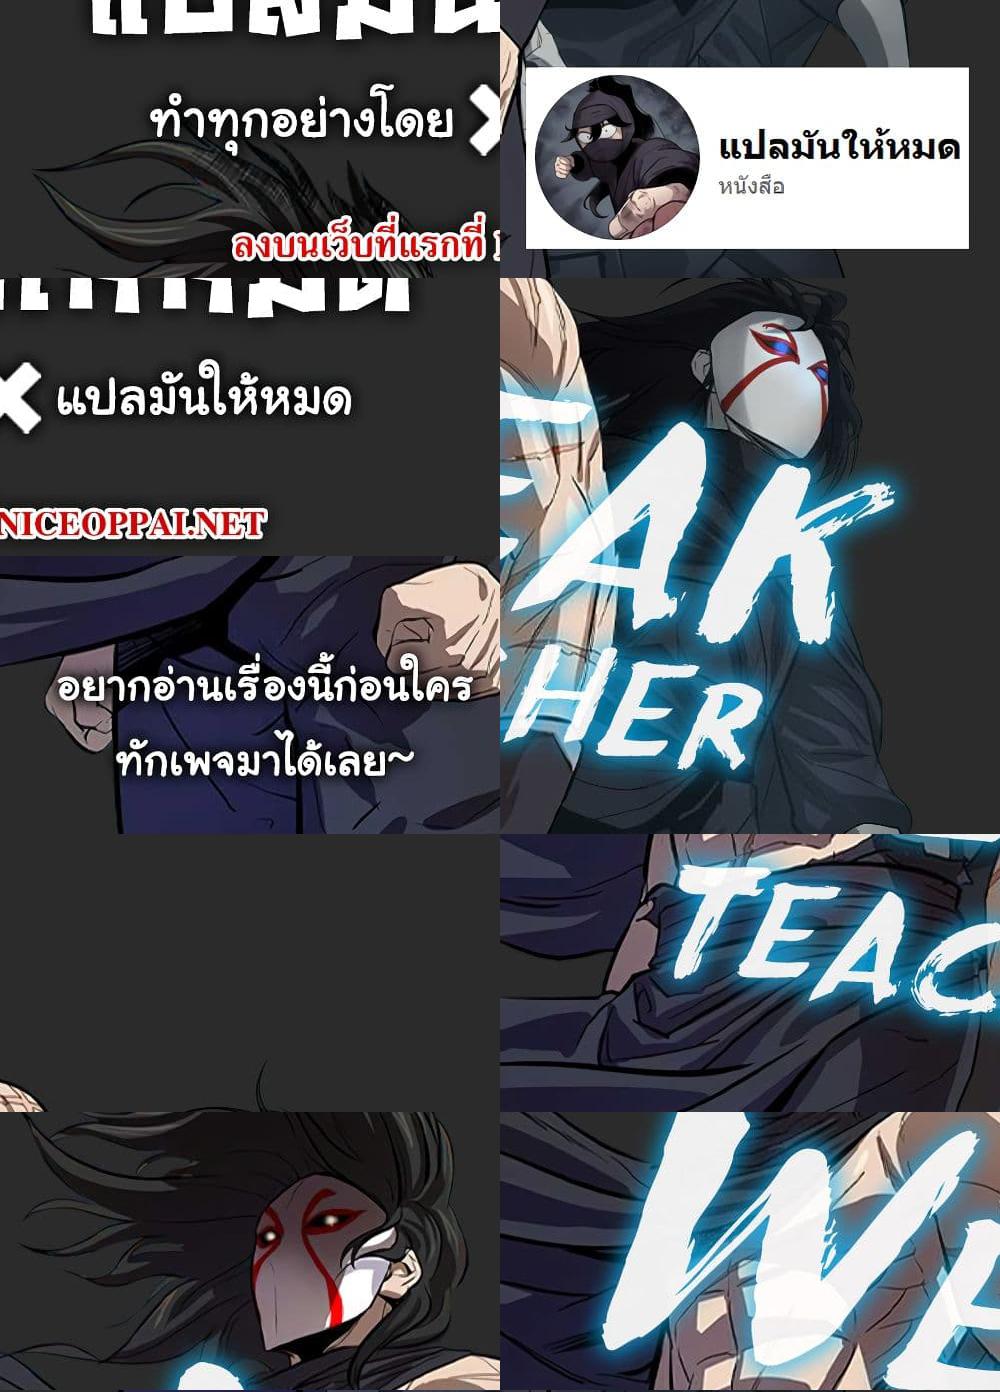 Weak Teacher - 9 - 1